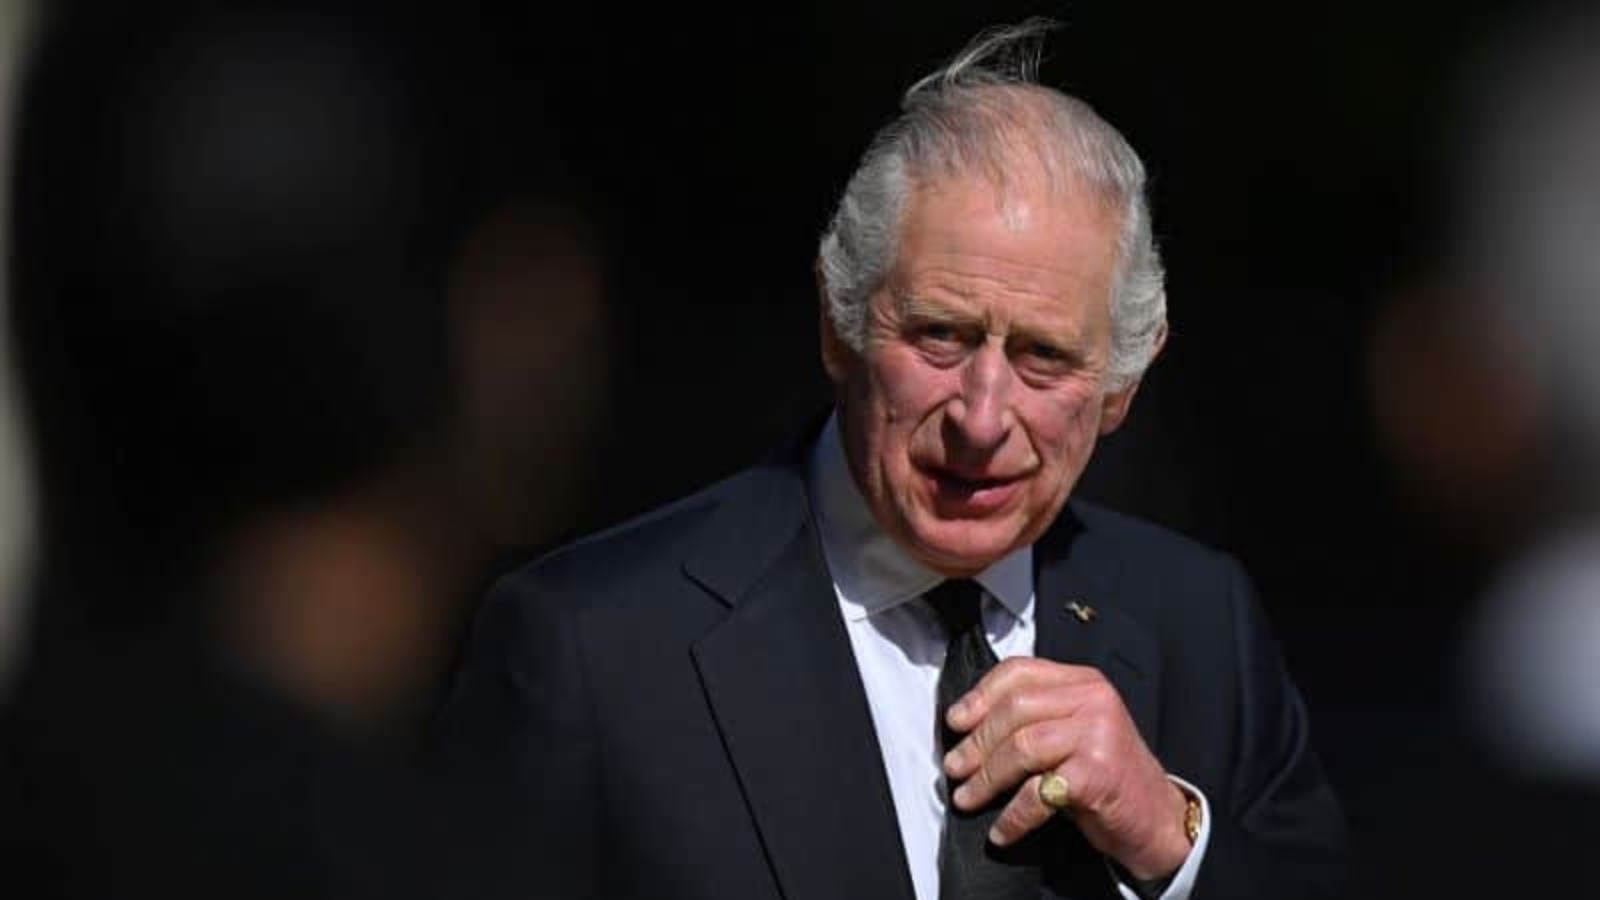 الملك تشارلز يتهيّأ لاستضافة قادة العالم واستكمال الاستعدادات لجنازة الملكة